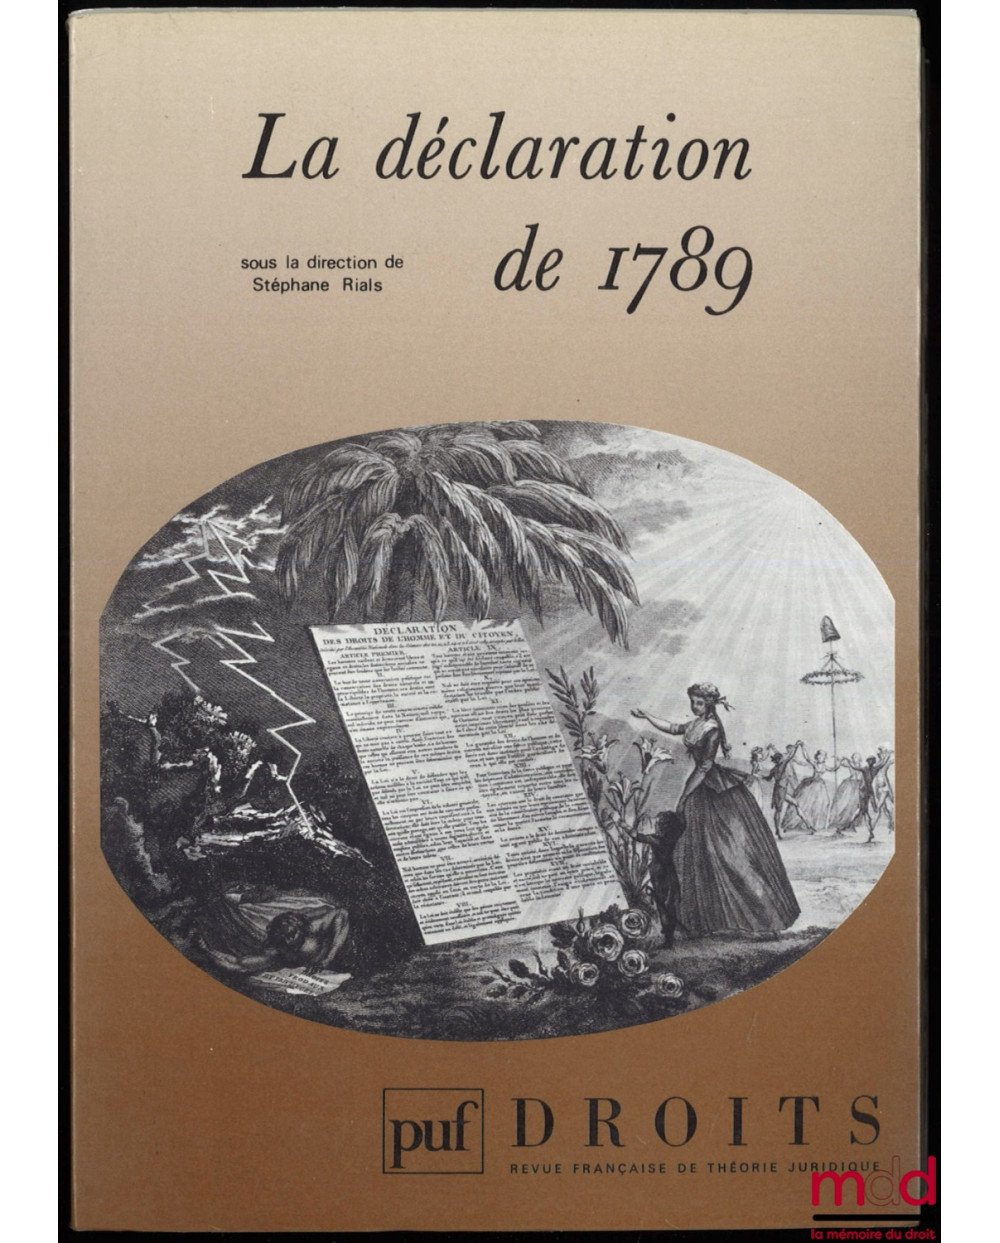 LA DÉCLARATION DE 1789, Droits, Revue Française de Théorie Juridique, n° 8